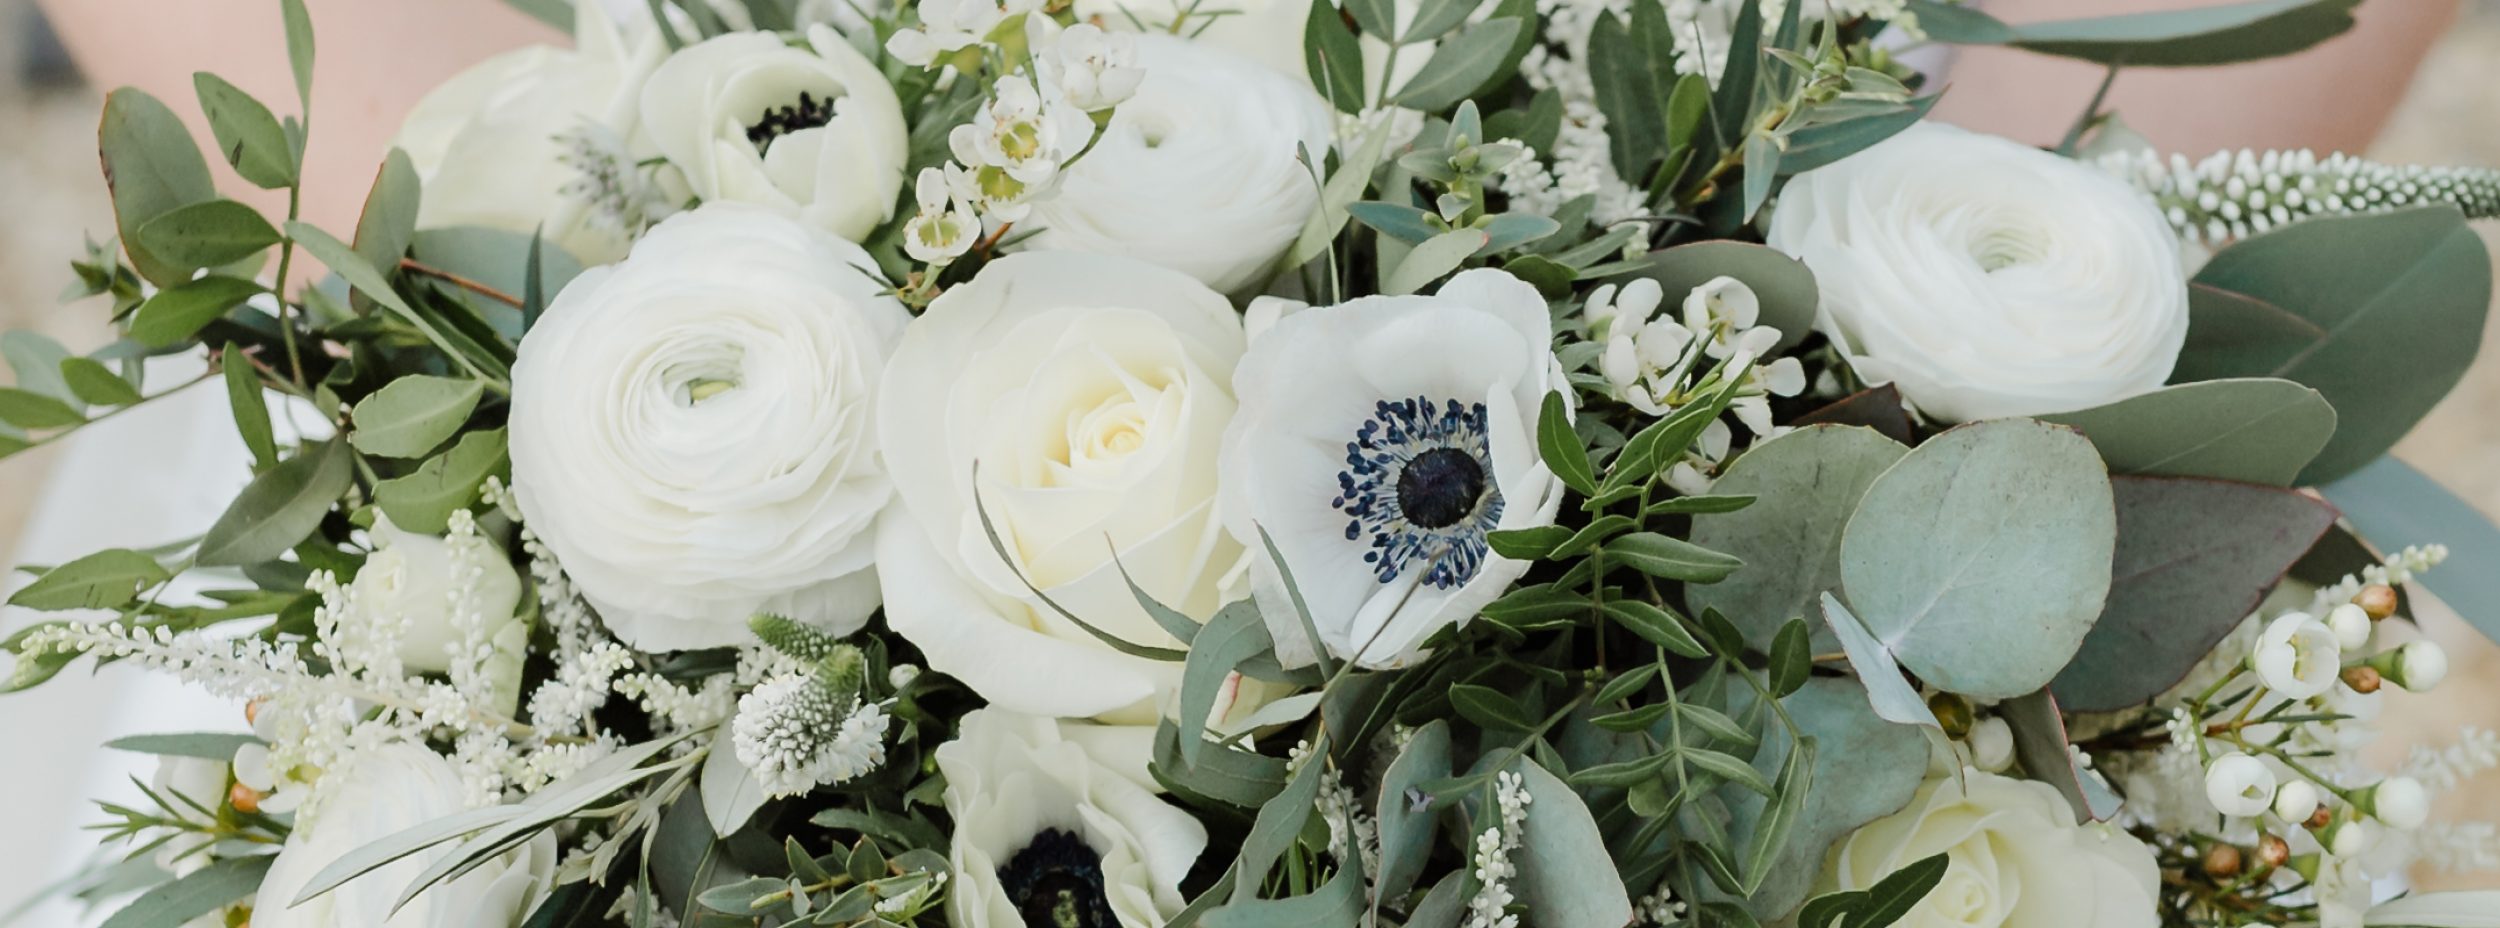 Darling Buds Wedding Floral Design